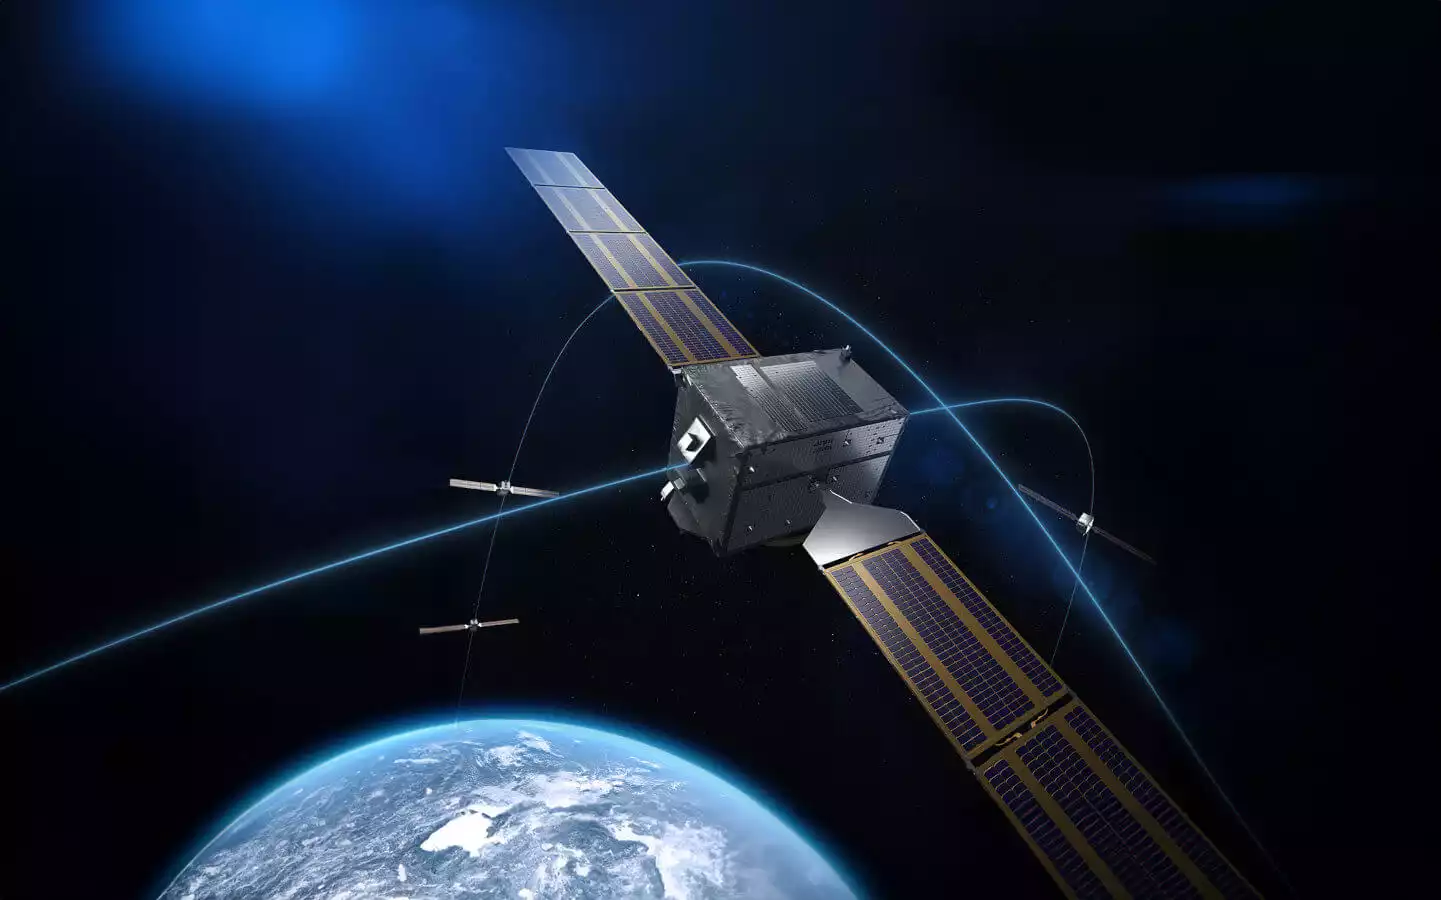 Le segment sol de la seconde génération du système de navigation Galileo confié à Thales Alenia Space